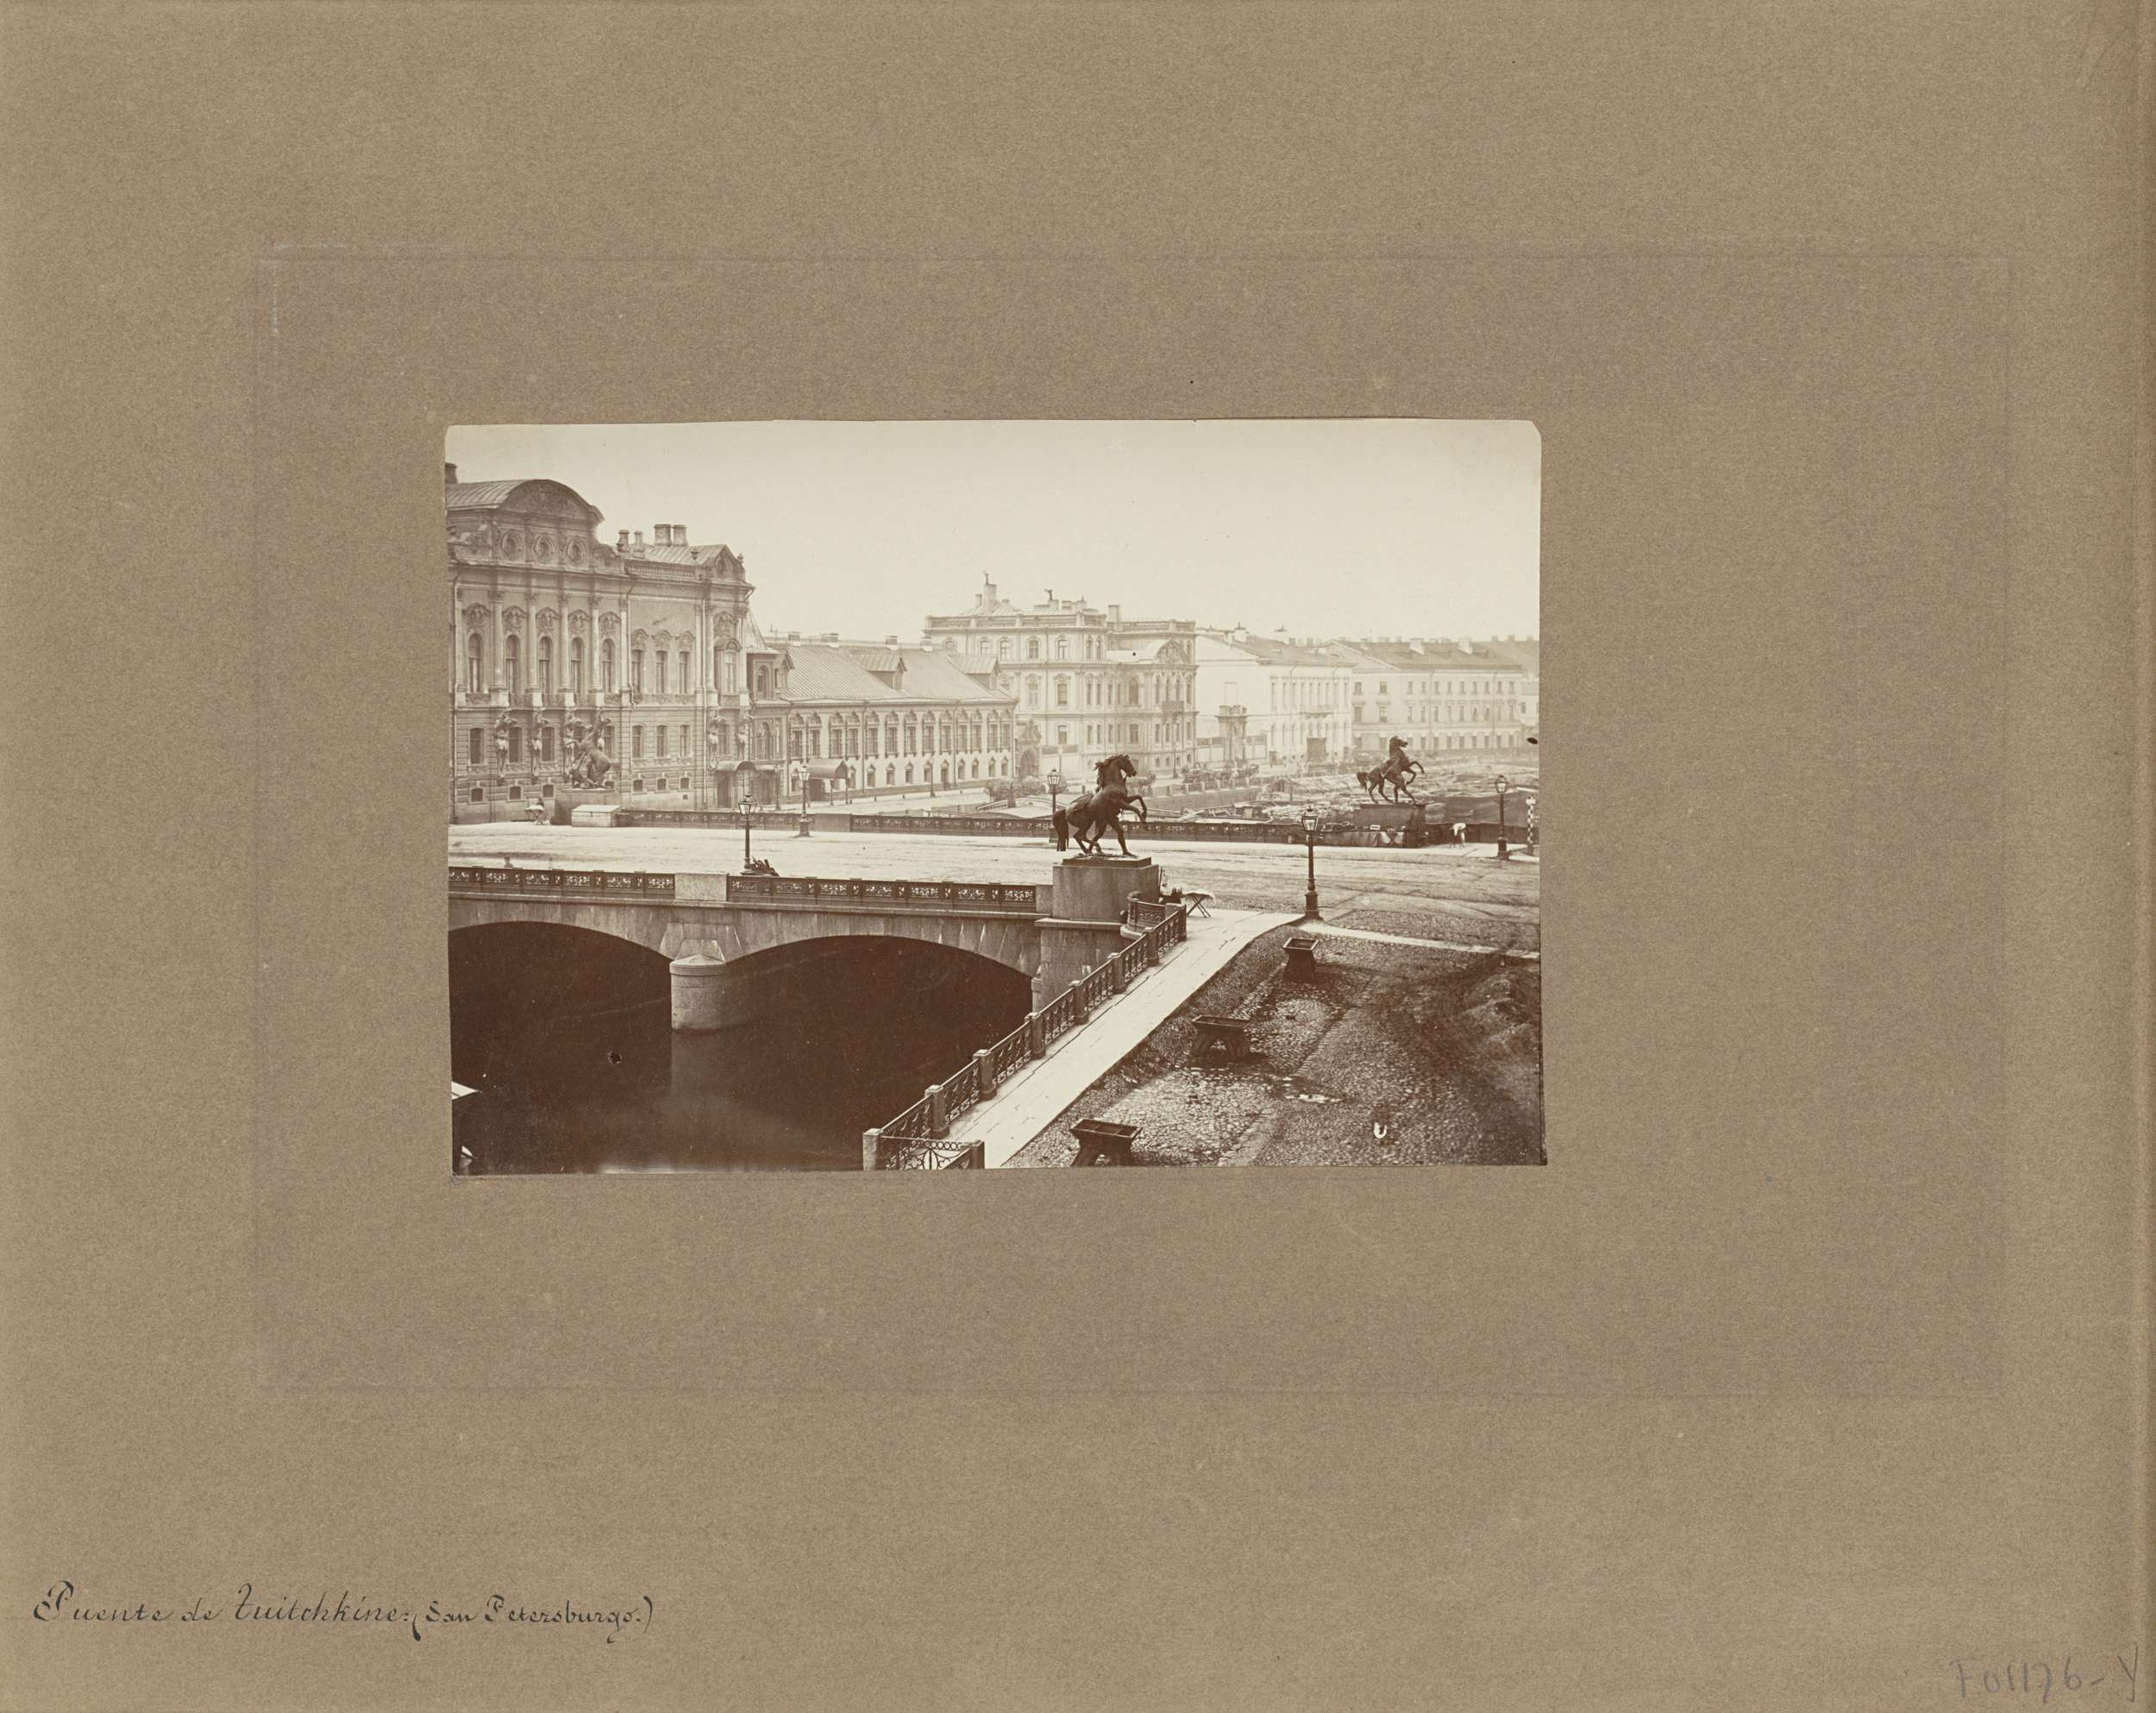 Anichkovbrug met beelden van de coupledentemmers in Saint Petersburg, Puente de Tuitchkine (San Petersburg.)